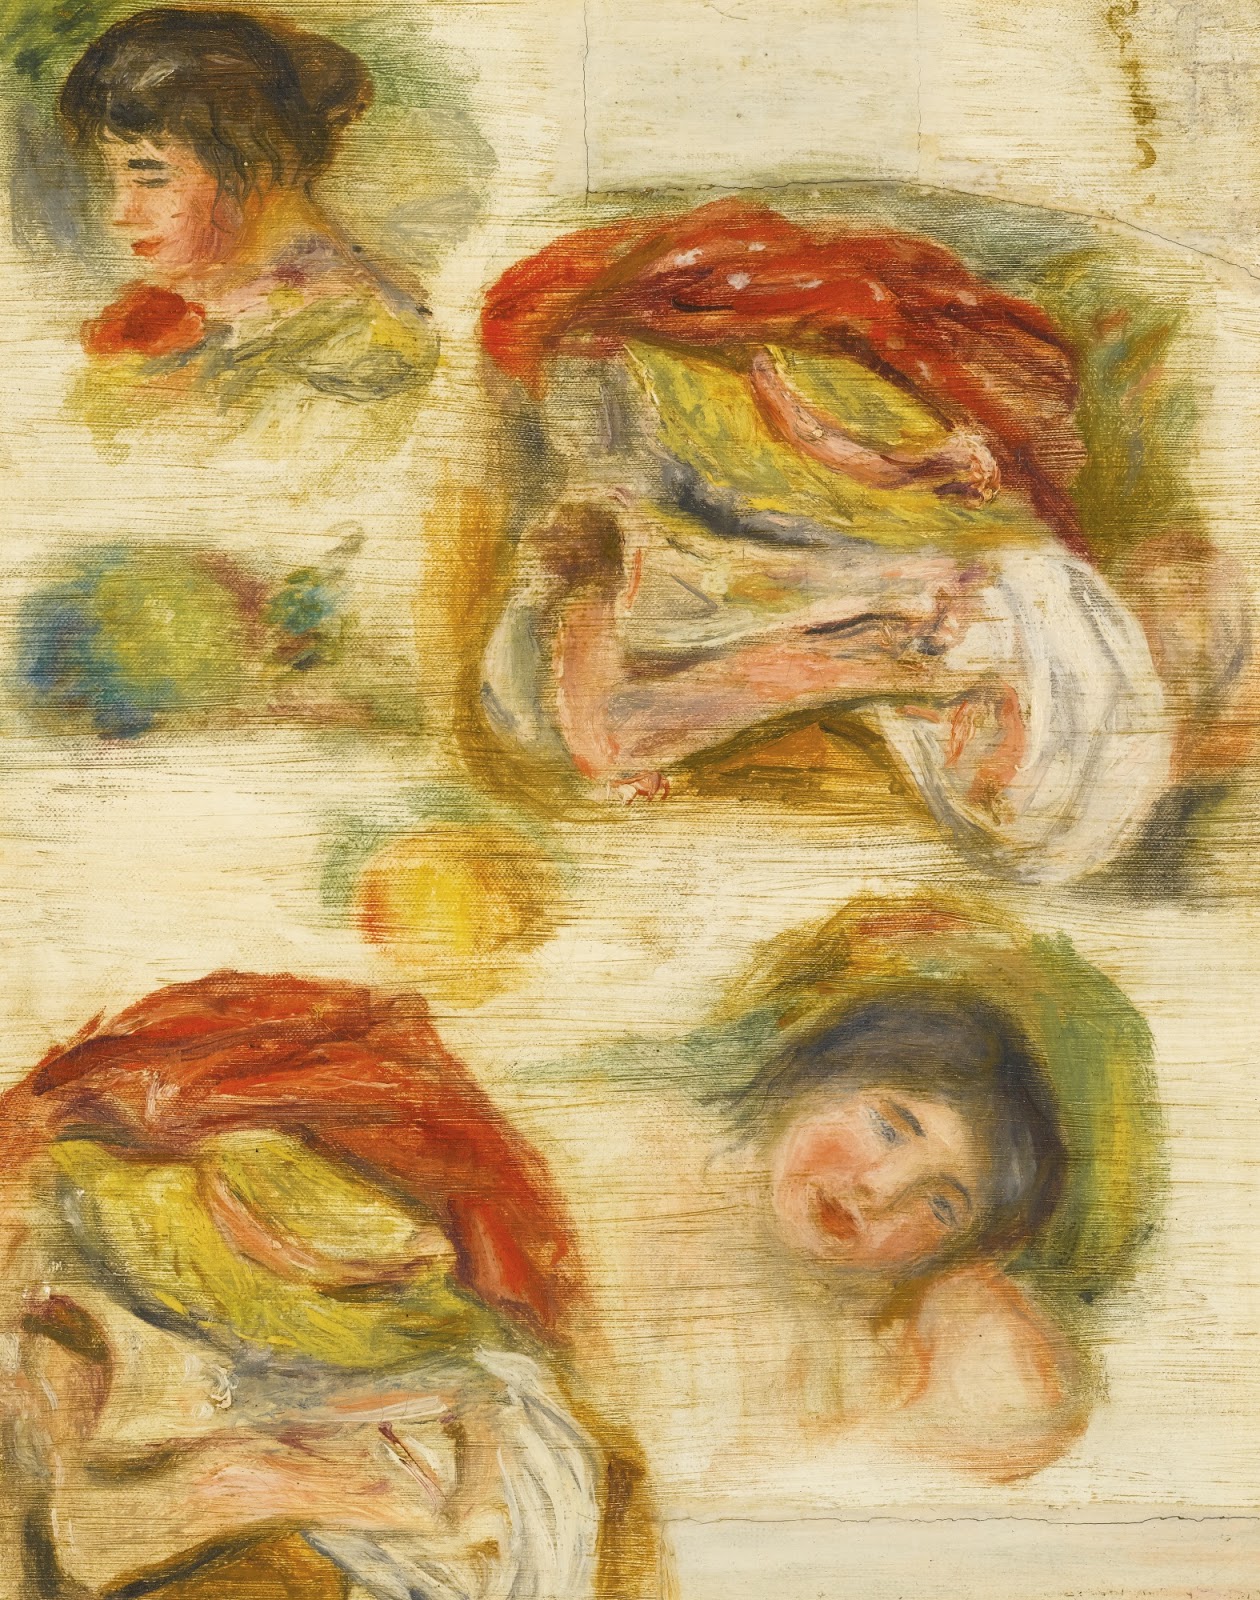 Pierre+Auguste+Renoir-1841-1-19 (485).jpg